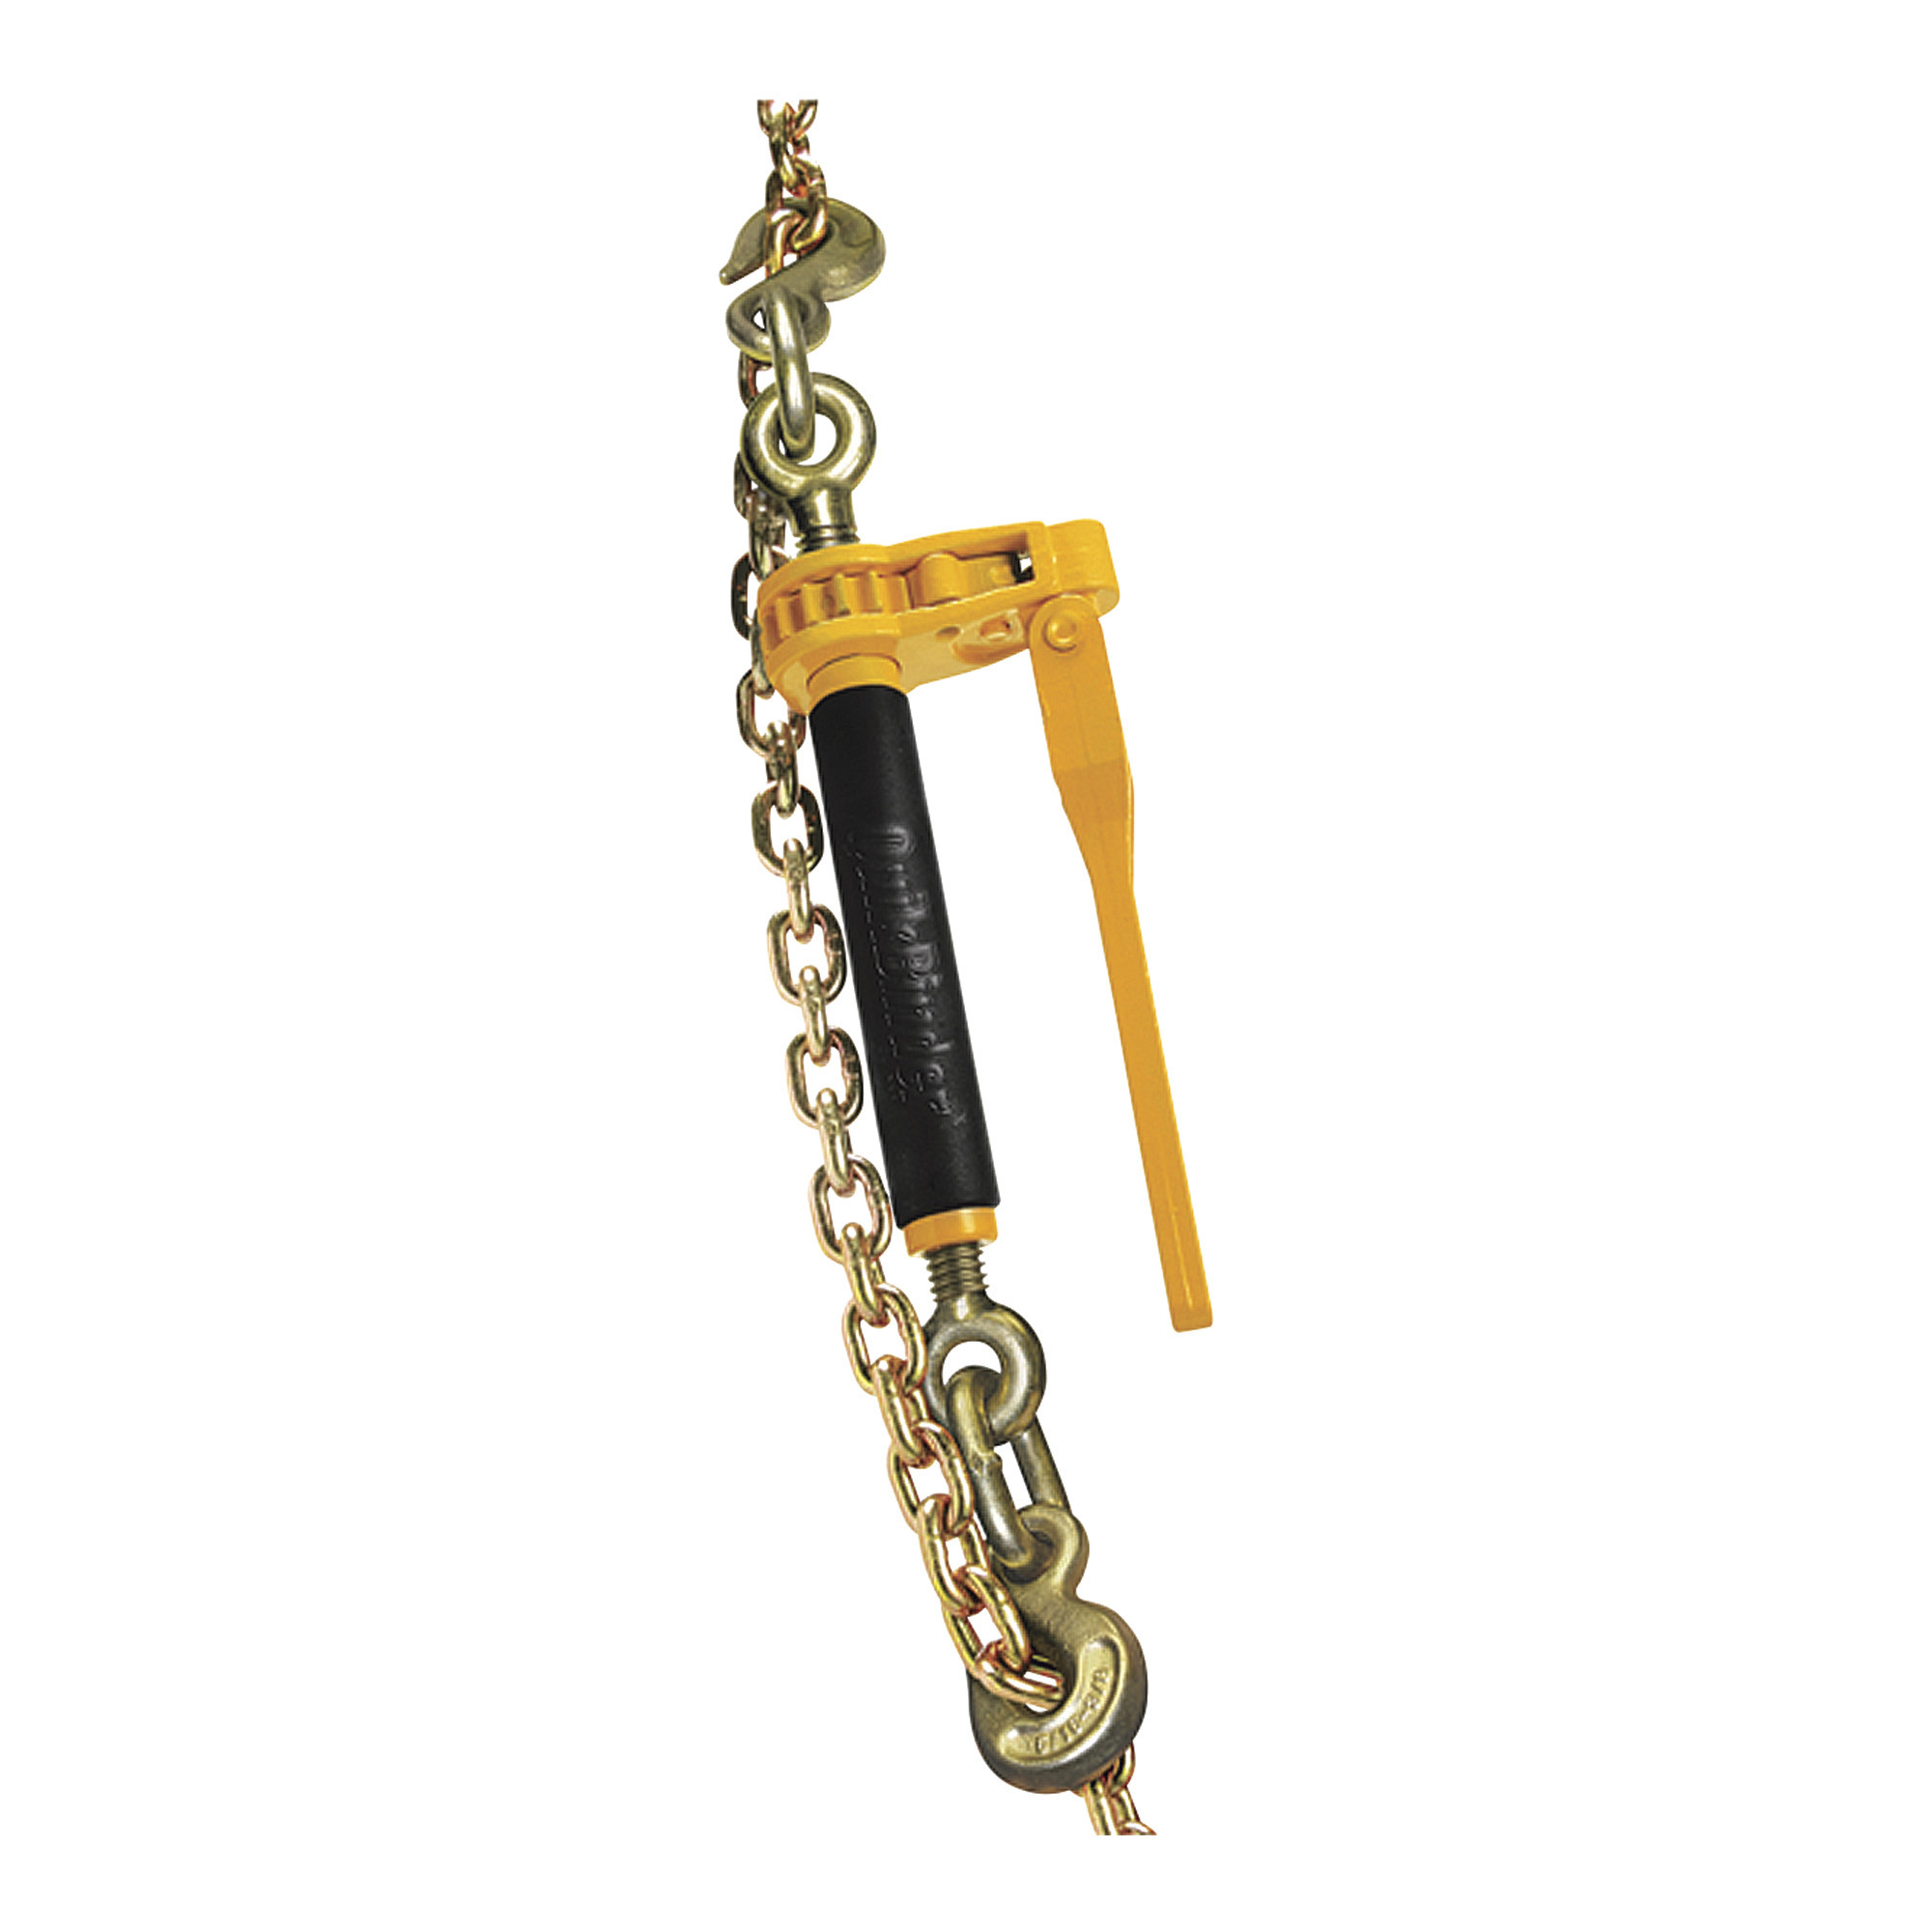 Peerless QuikBinder Plus Ratchet Chain Binders â 12,000-Lb. Load Capacity, Model H5125-0858